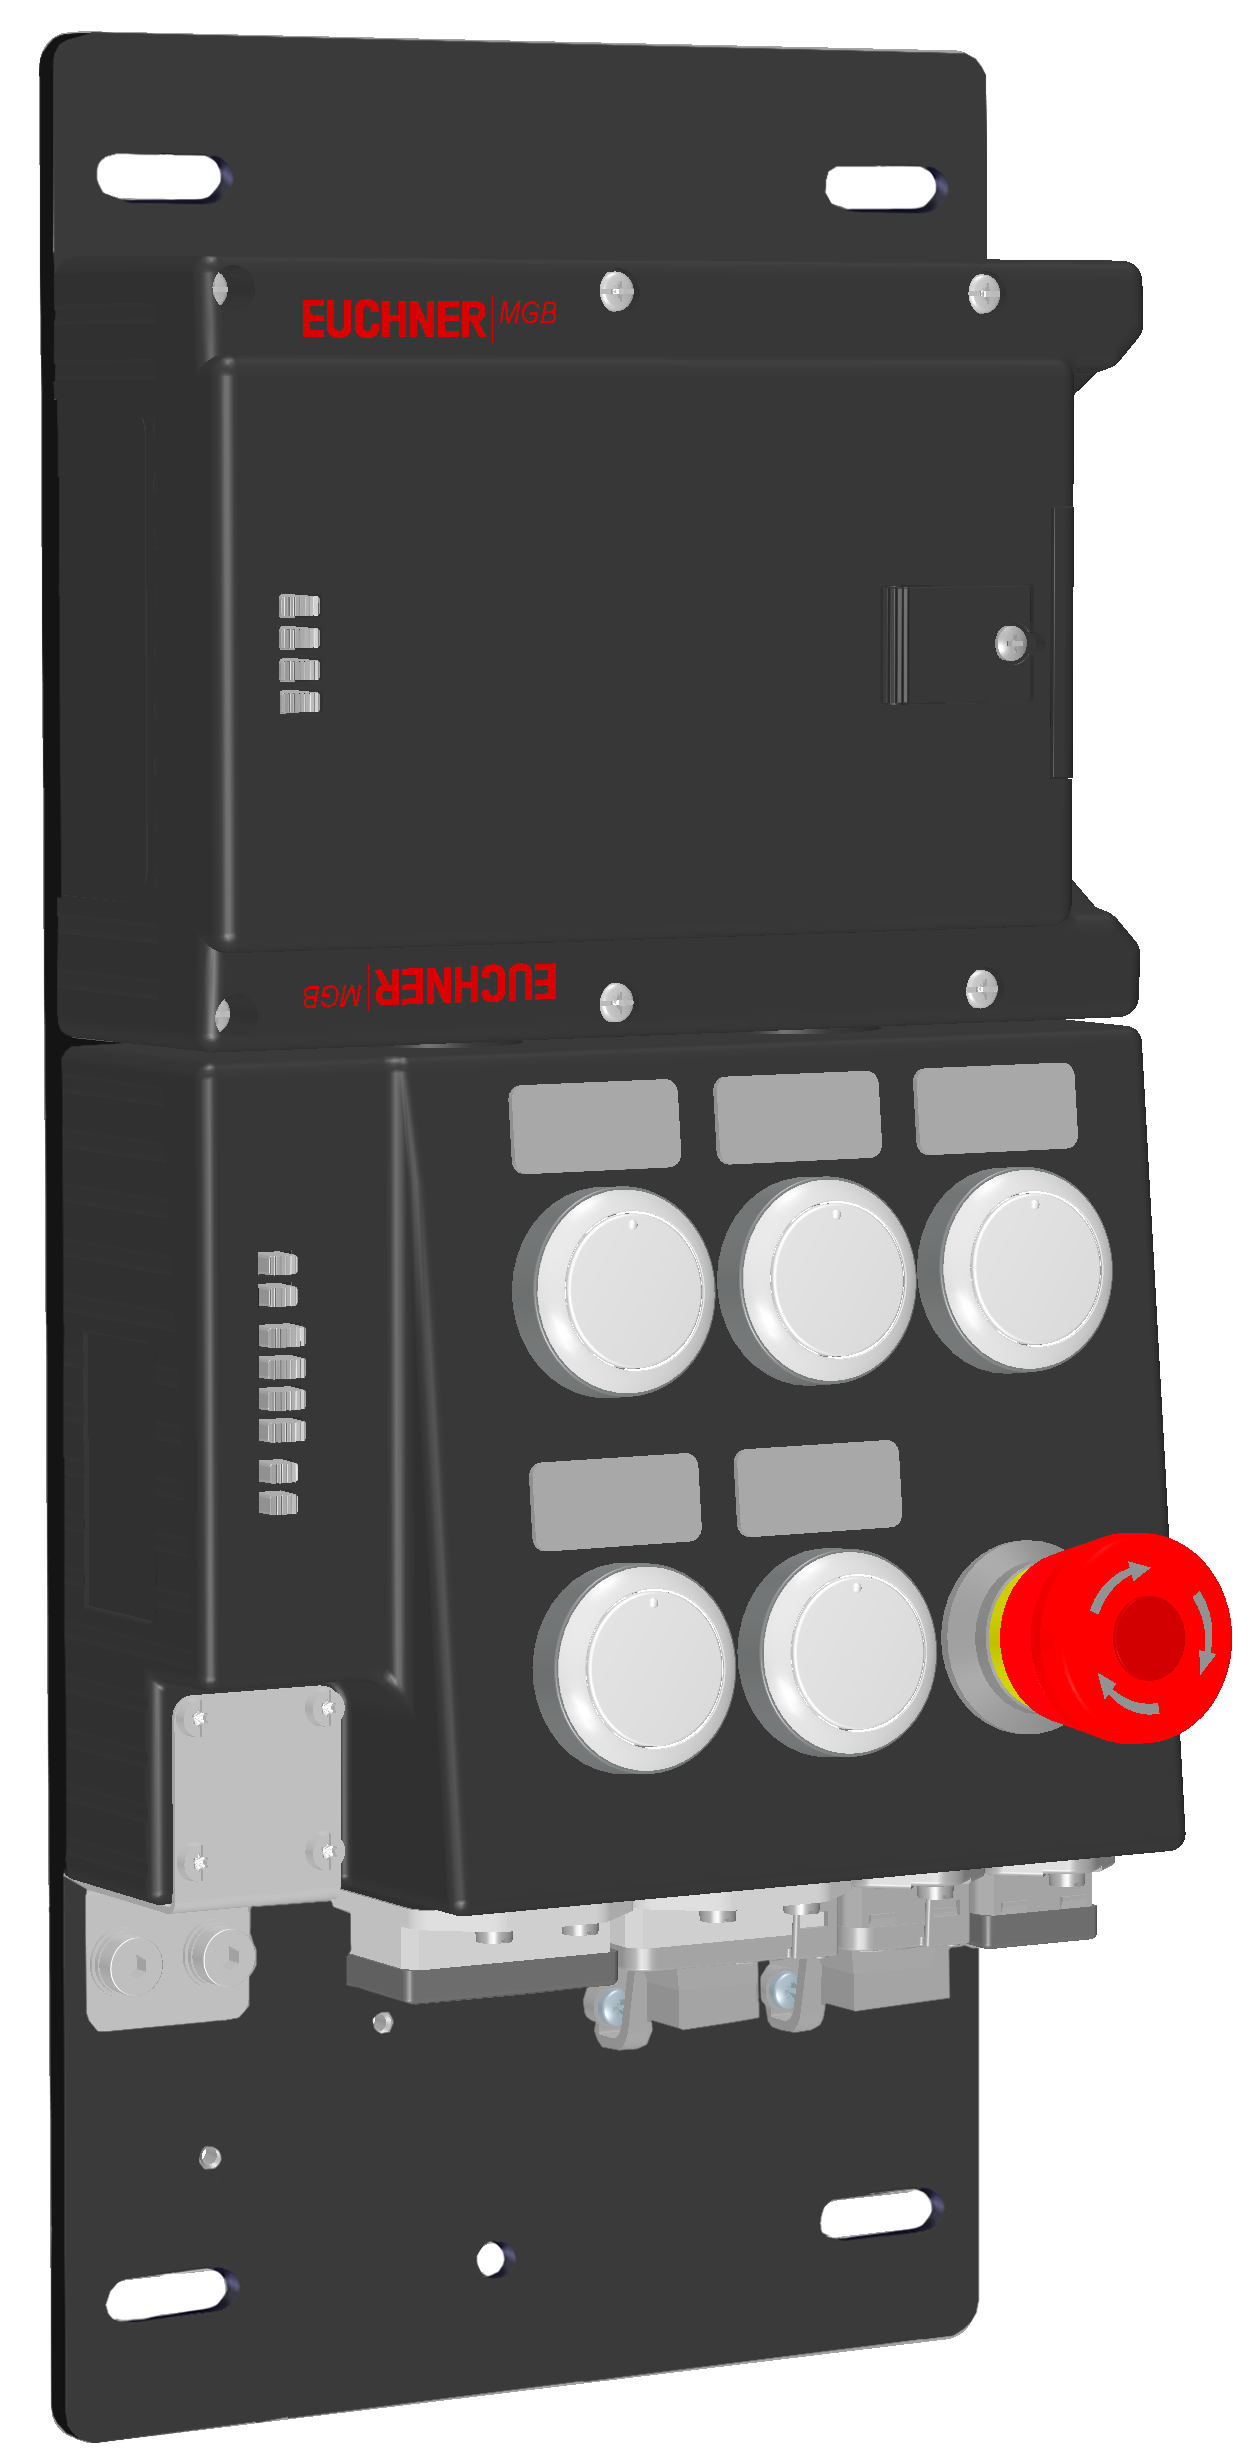 ロック モジュール MGB-L2B-PNA-R-121836  (注文するいいえ。 121836)